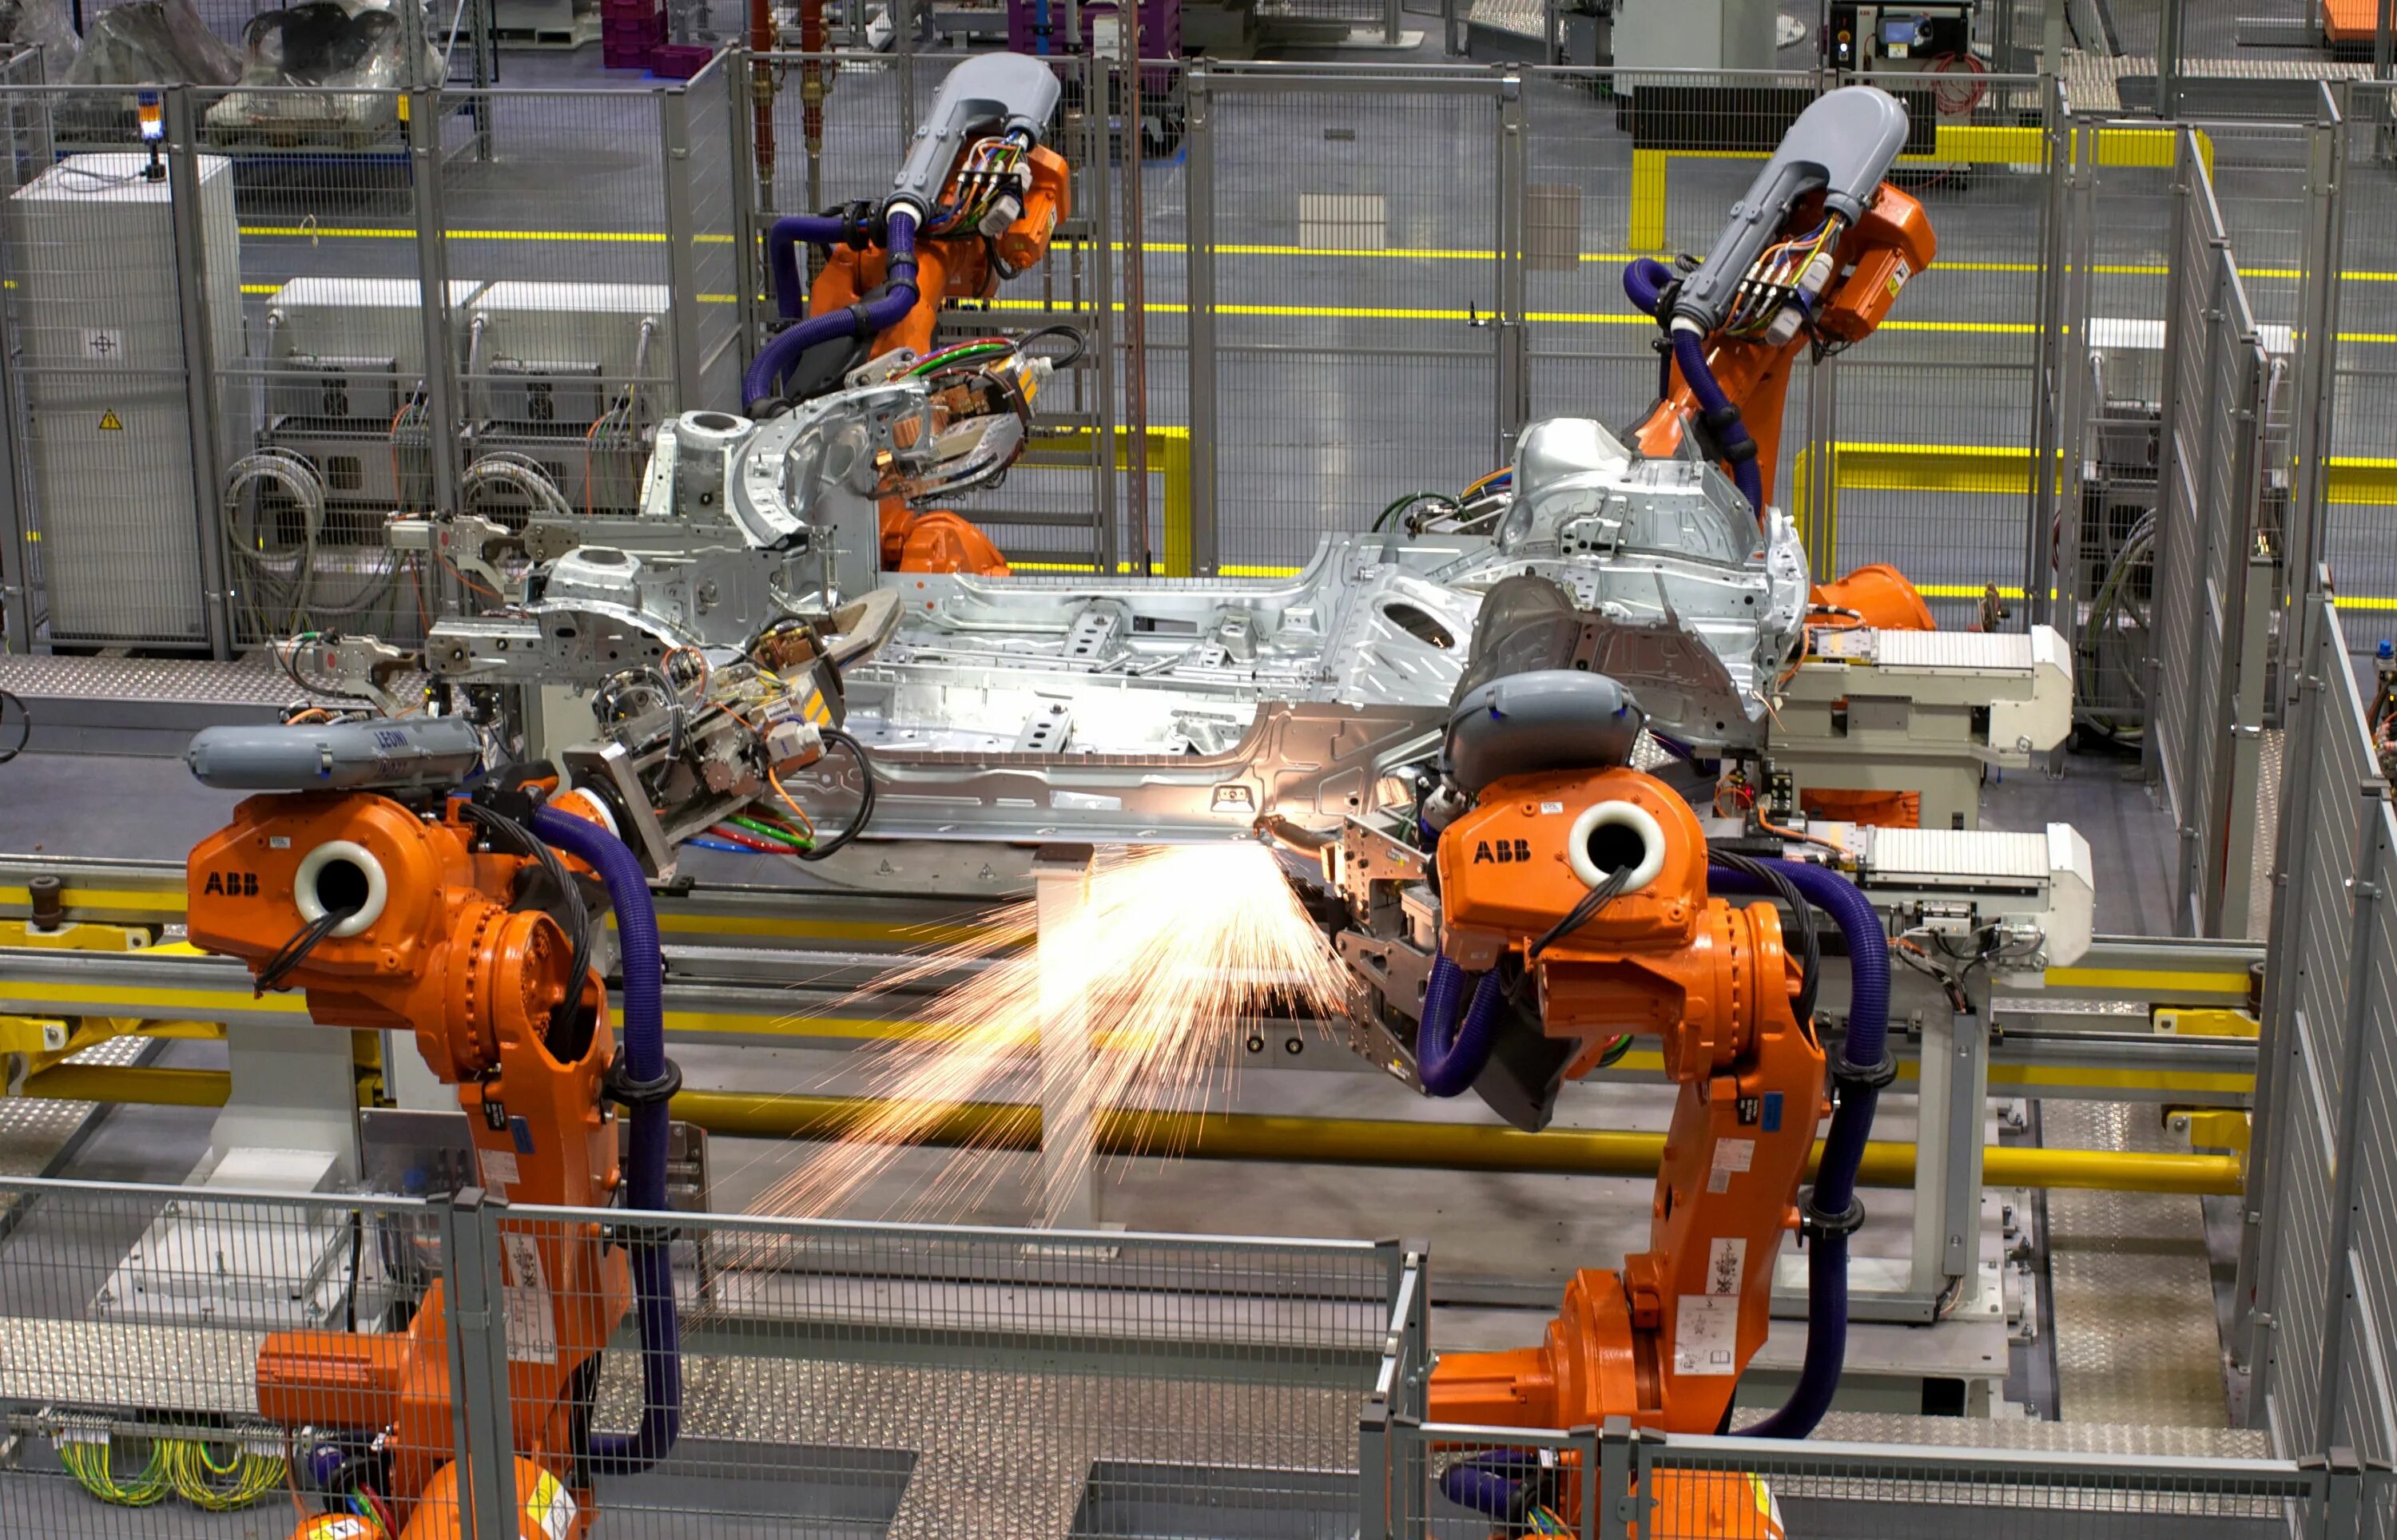 Цех роботов. Робот конвейер. Промышленные роботы. Роботы на производстве. Промышленная робототехника.